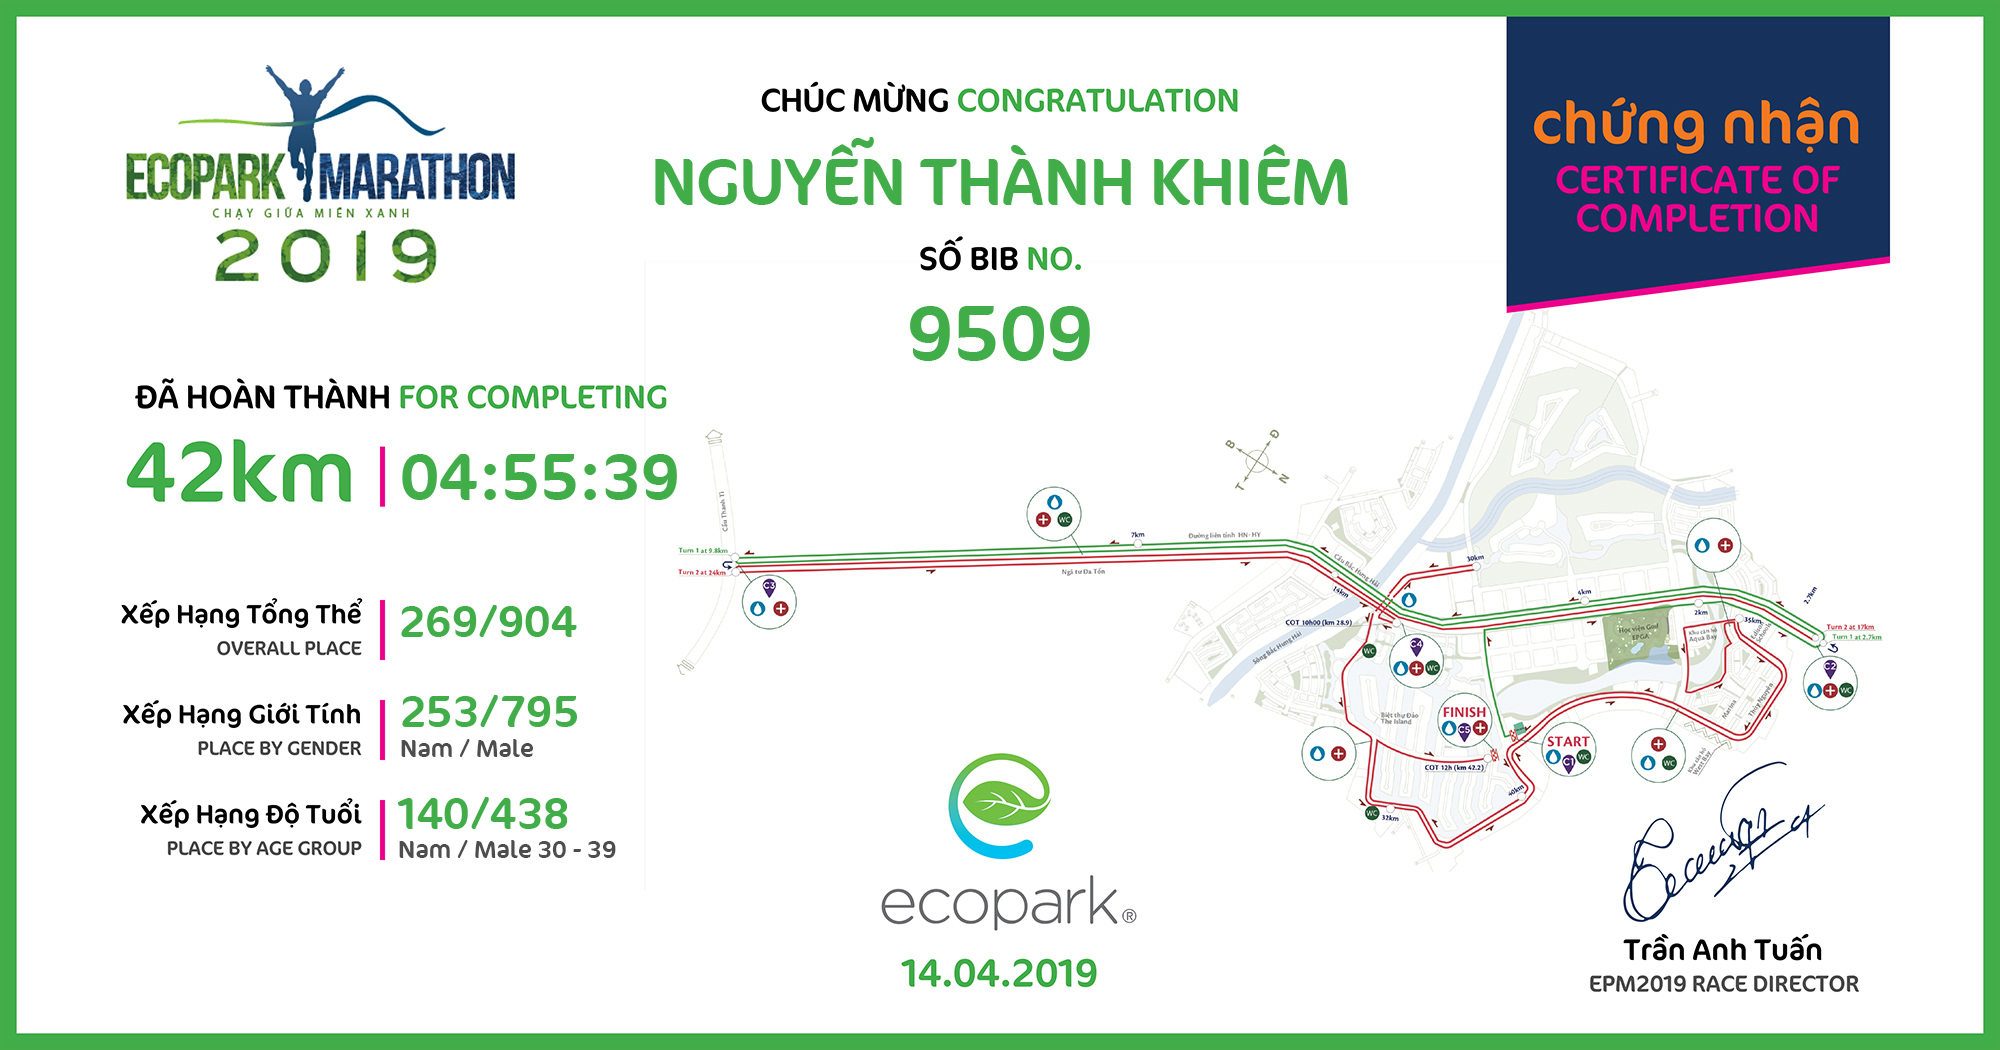 9509 - Nguyễn Thành Khiêm